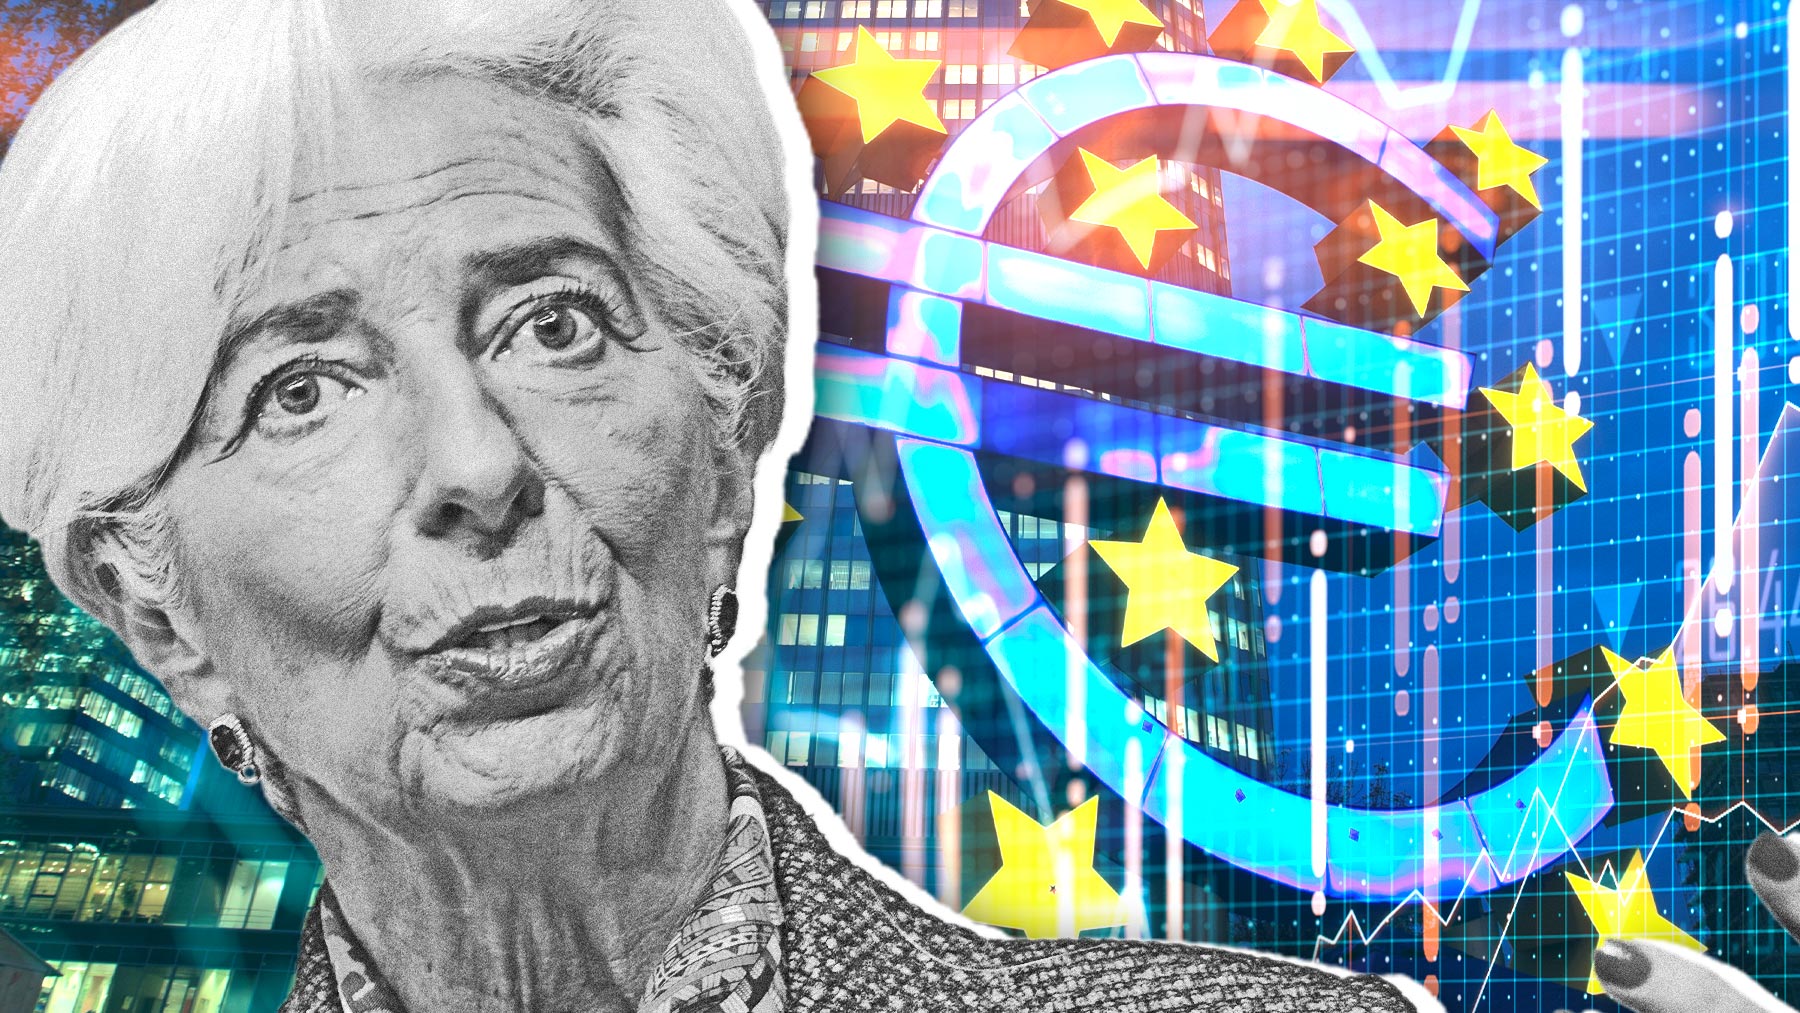 Christine Lagarde, presidenta del BCE.